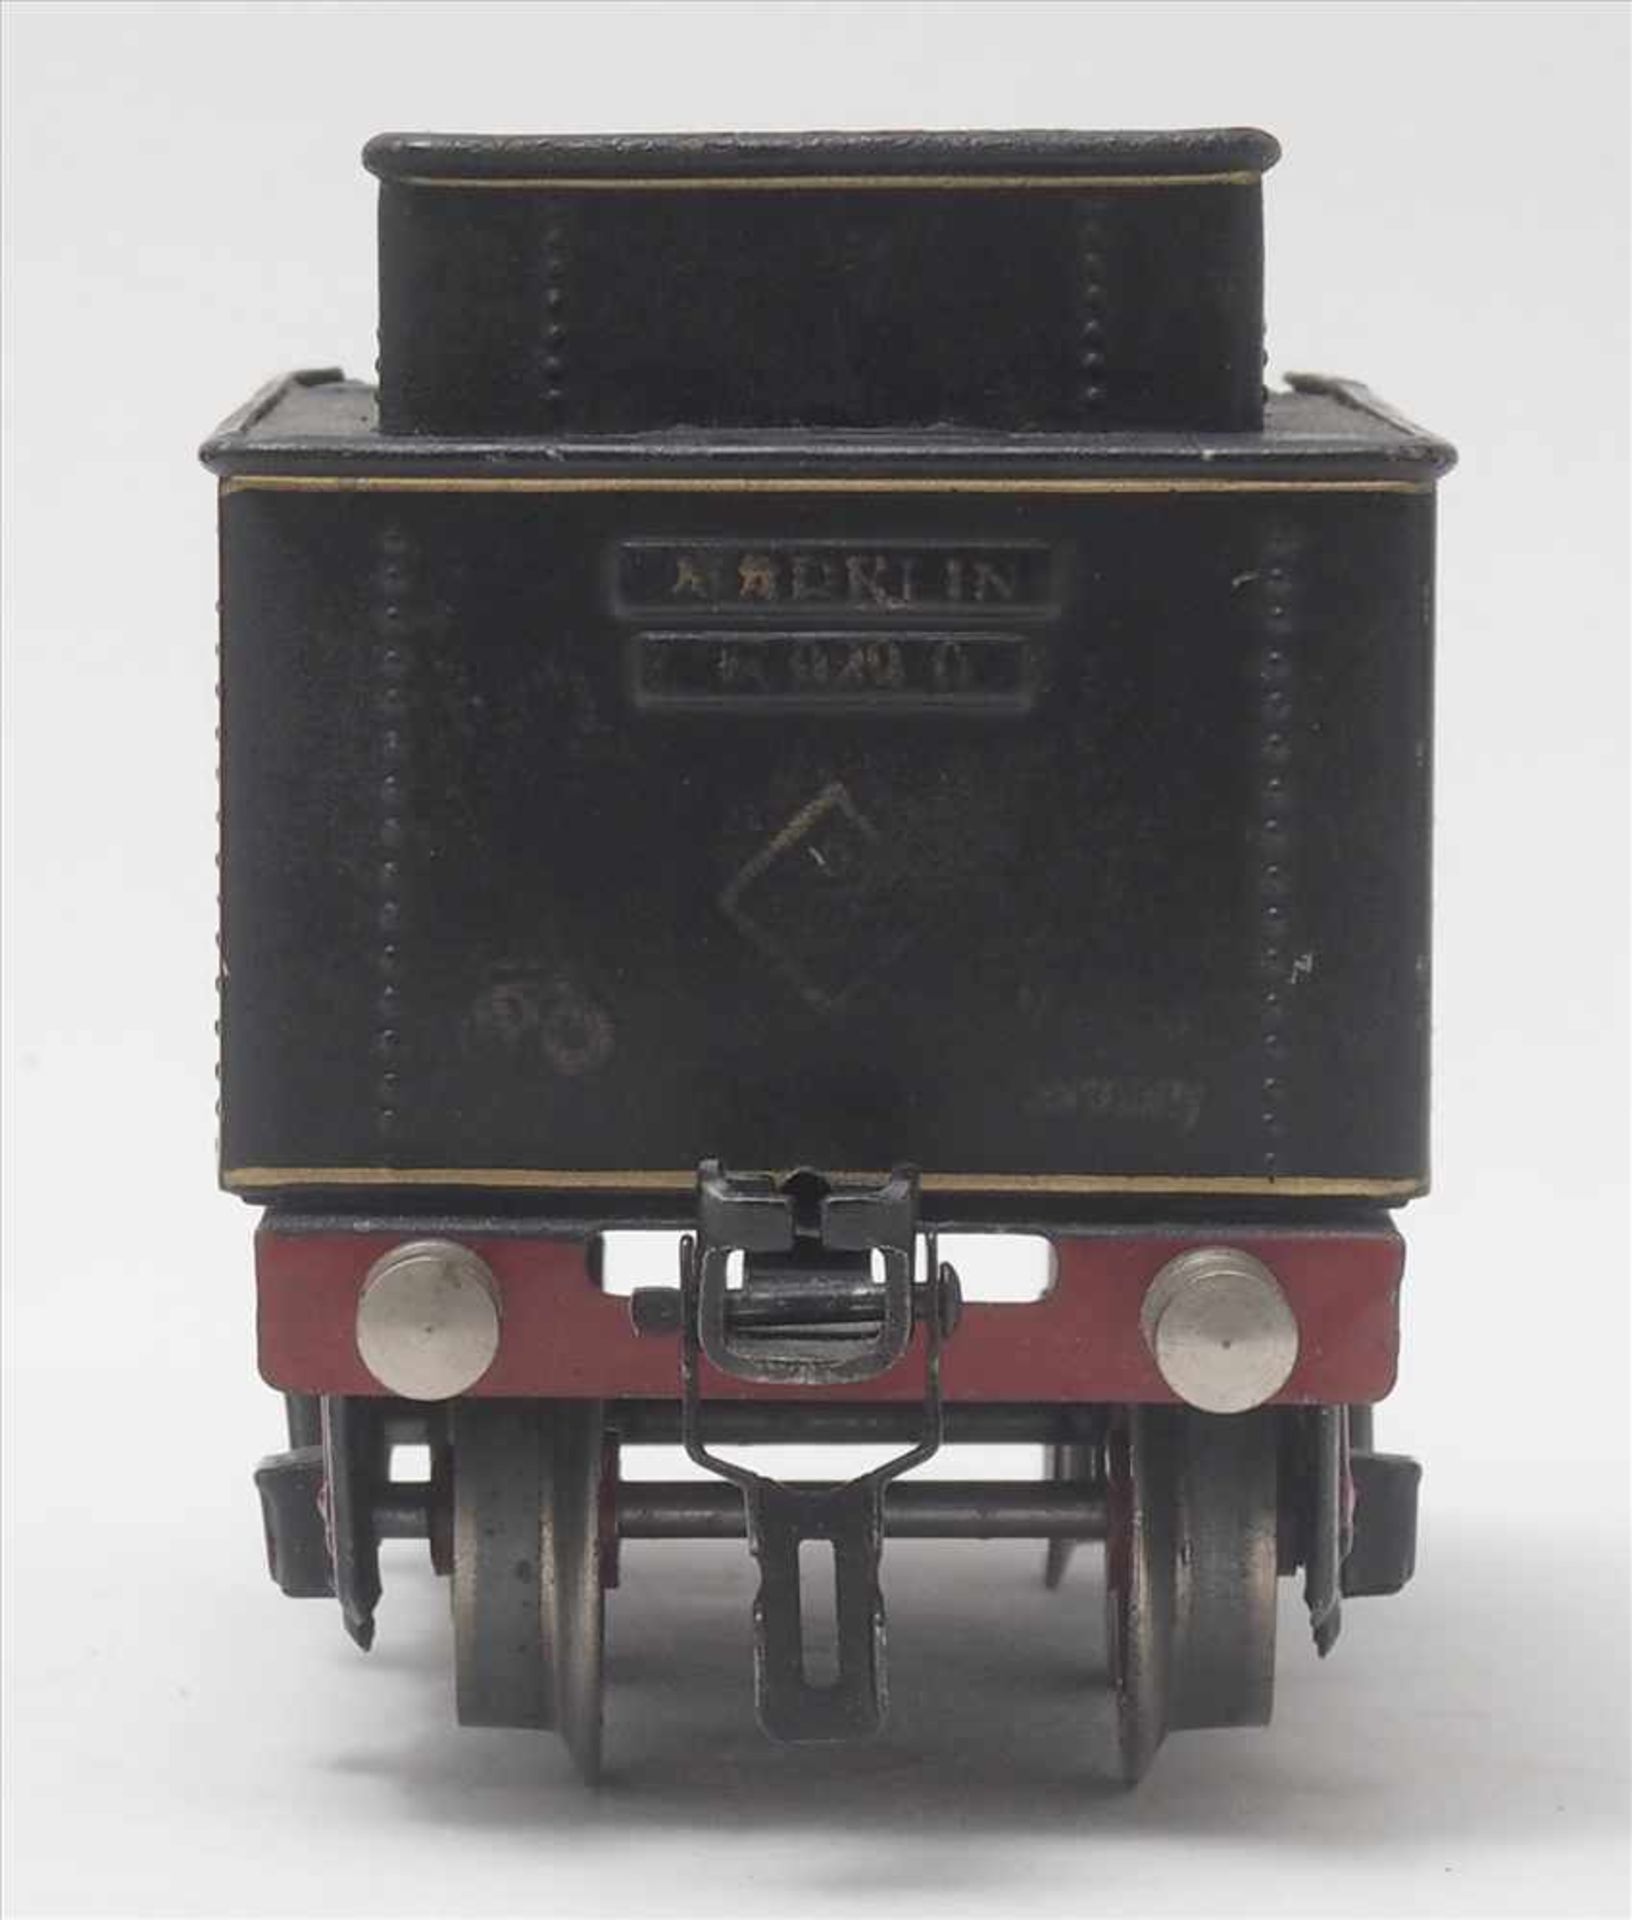 Märklin DampflokSpur 0, 1930-er Jahre. Elektroantrieb. Achsfolge 2B. E70/12920 Dampflokomotive mit - Bild 9 aus 9